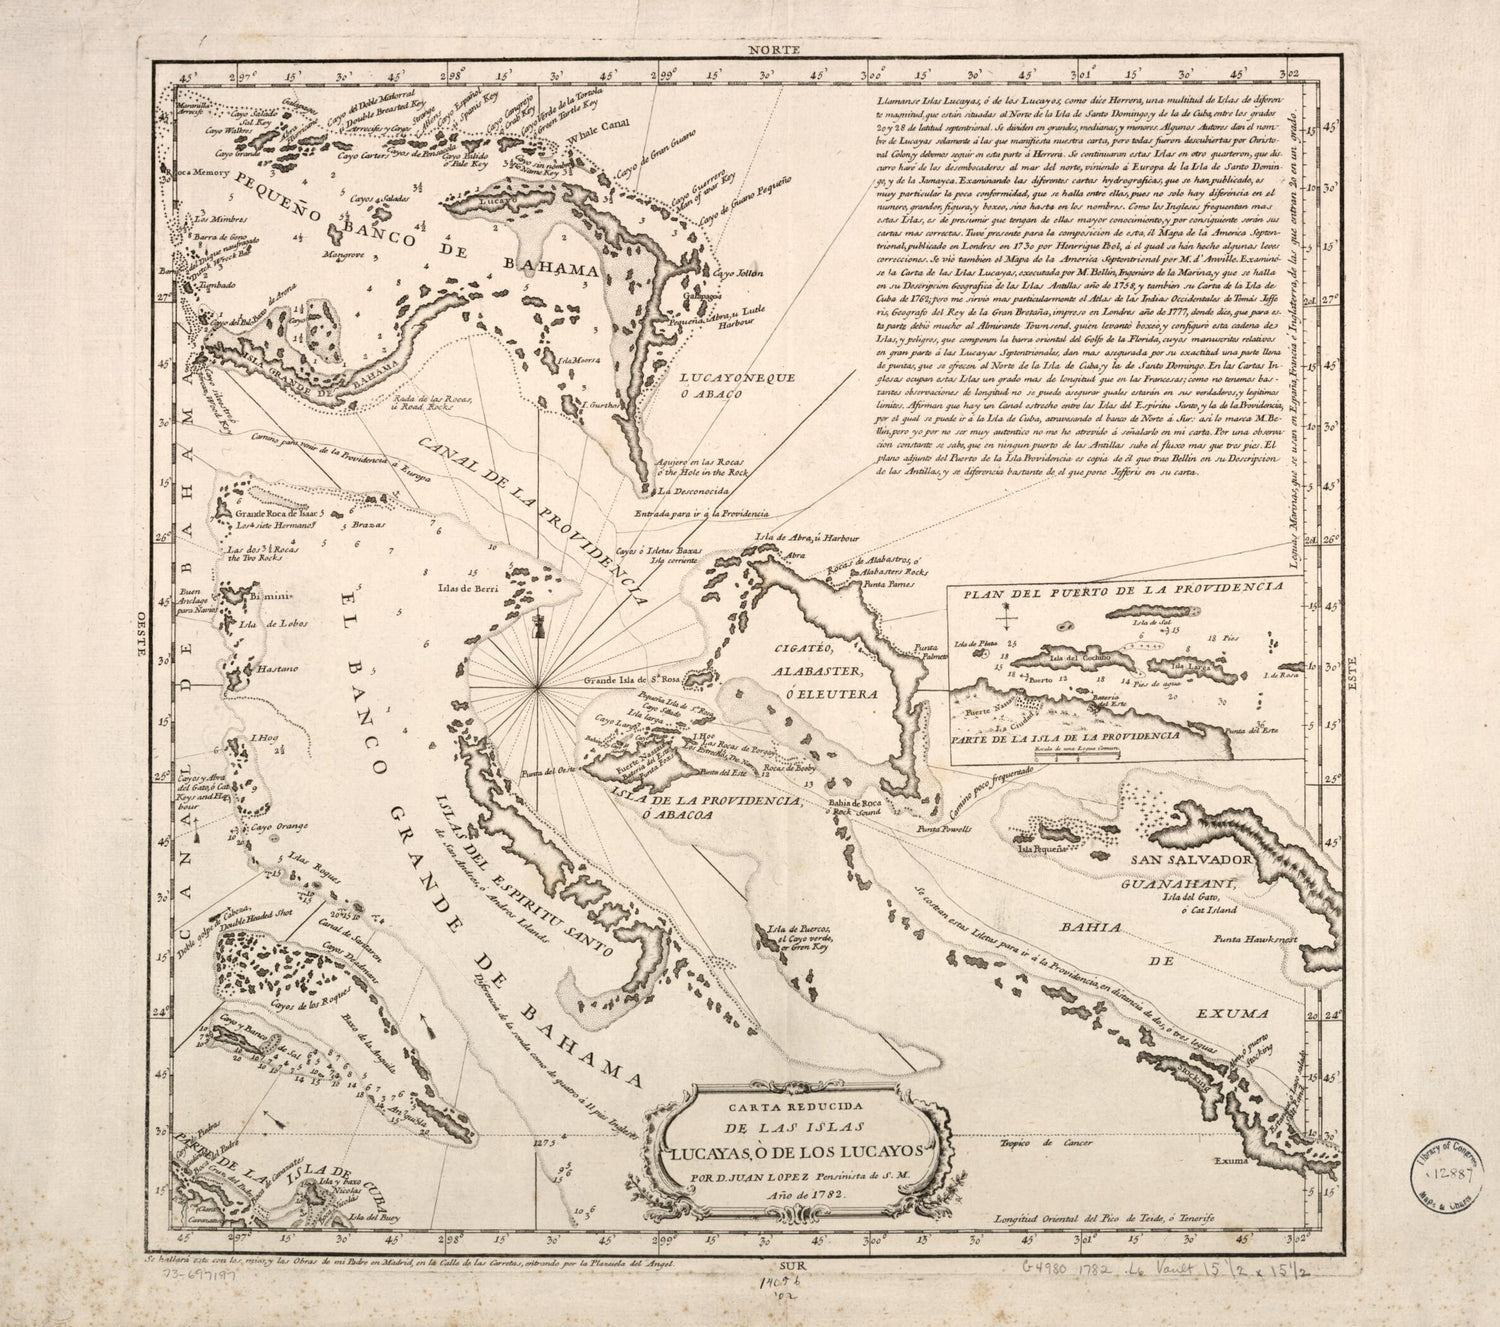 This old map of Carta Reducida De Las Islas Lucayas, ò De Los Lucayos from 1782 was created by Juan López in 1782